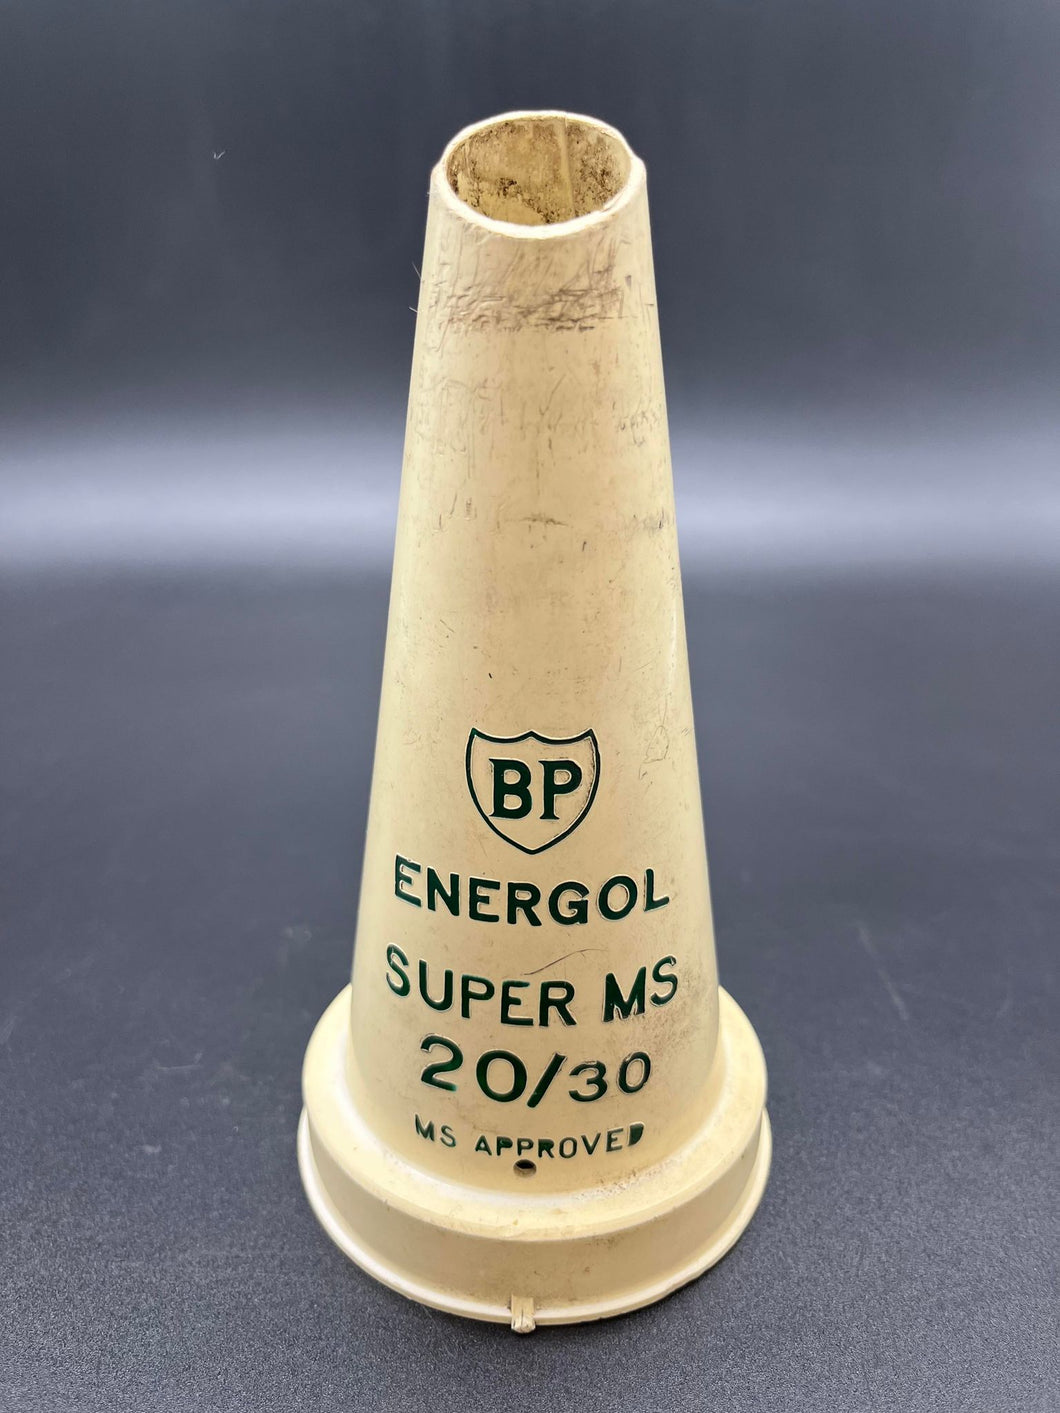 BP Energol Super MS 20/30 Plastic Oil Bottle Top